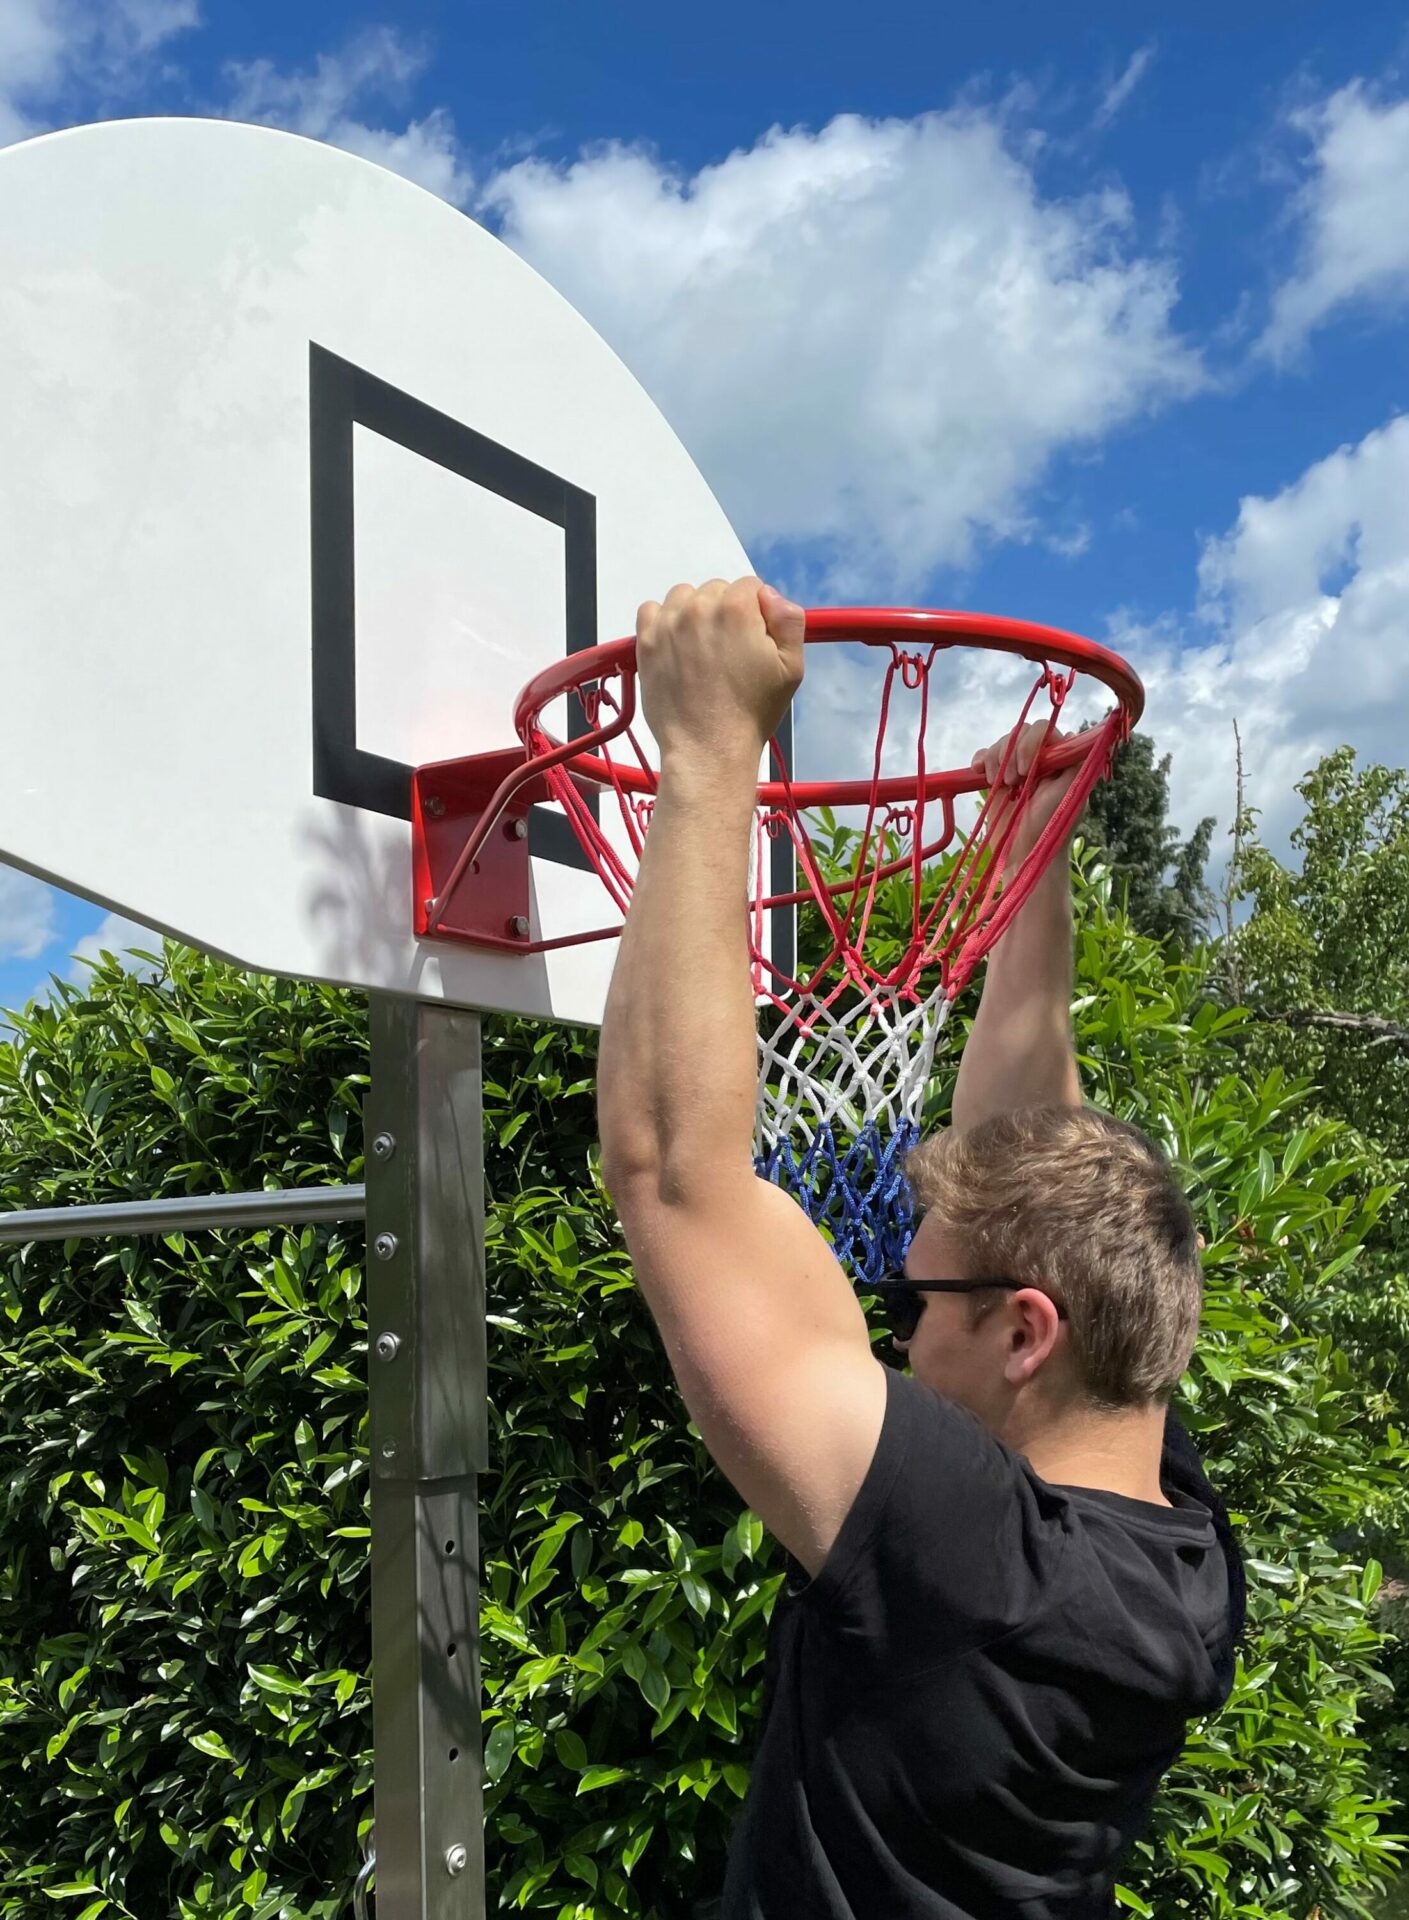 Basketball Halterung - Kostenloser Versand Für Neue Benutzer